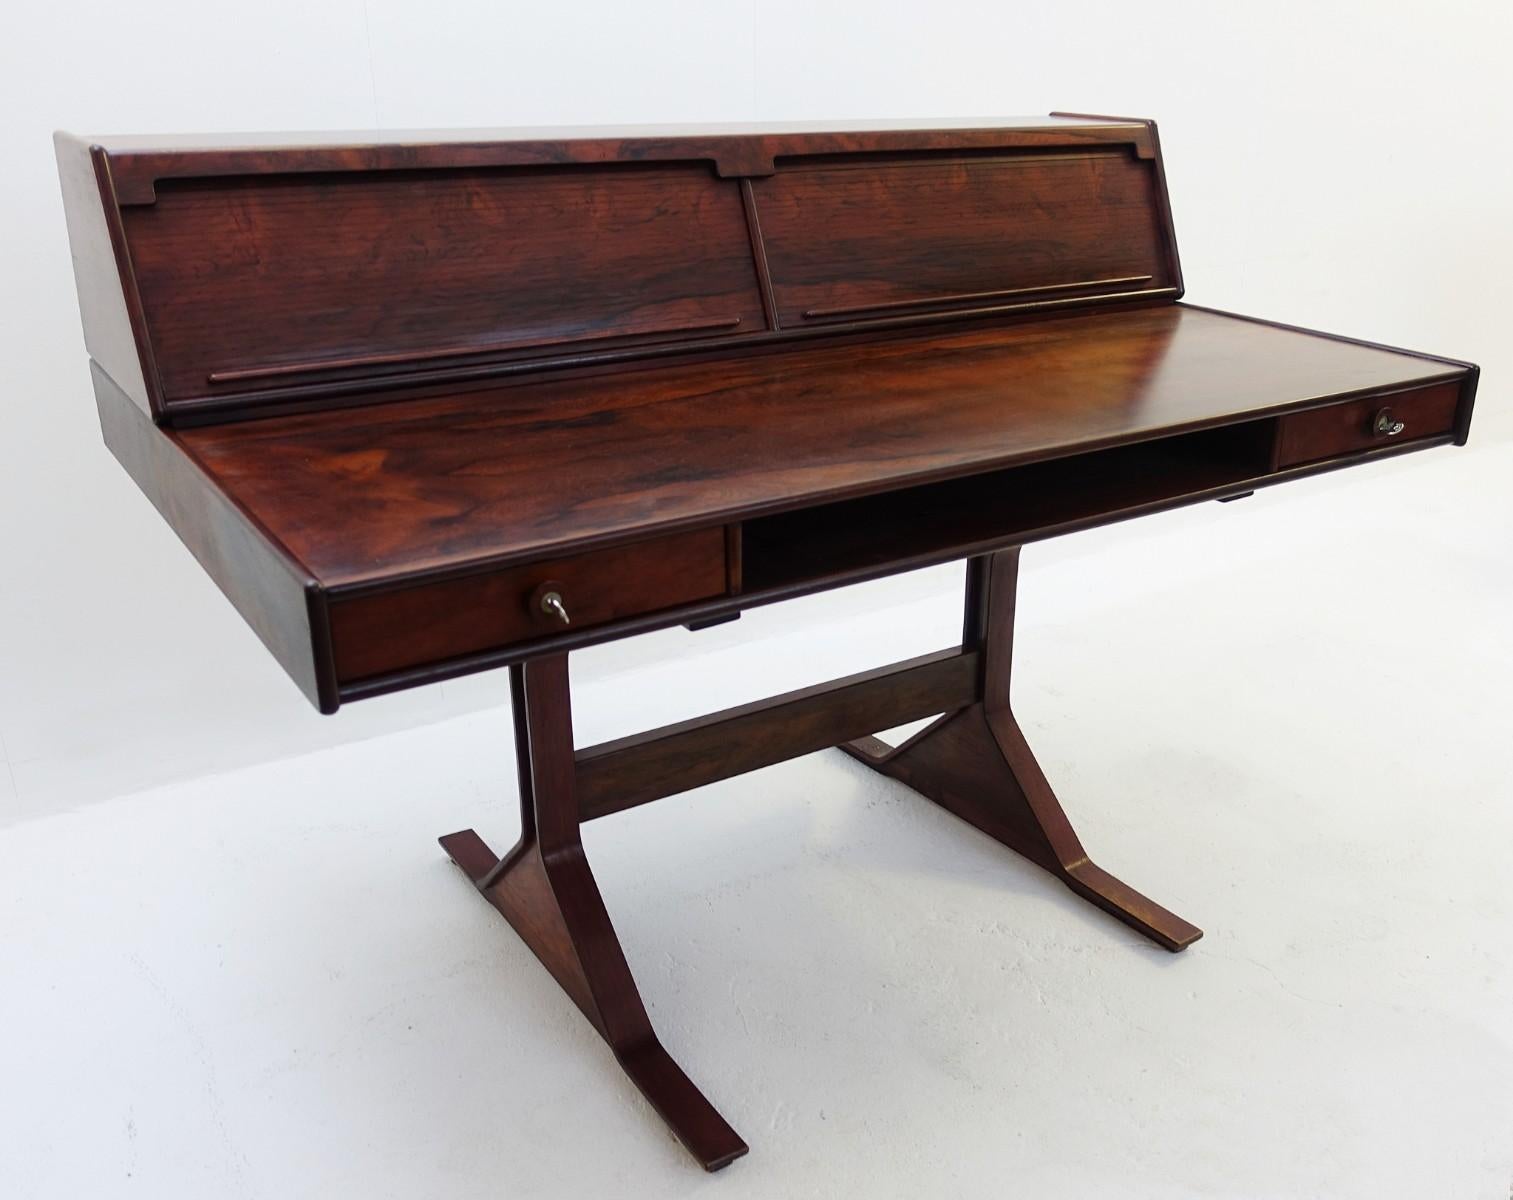 Desk by Gianfranco Frattini for Bernini, 1957 Italy.